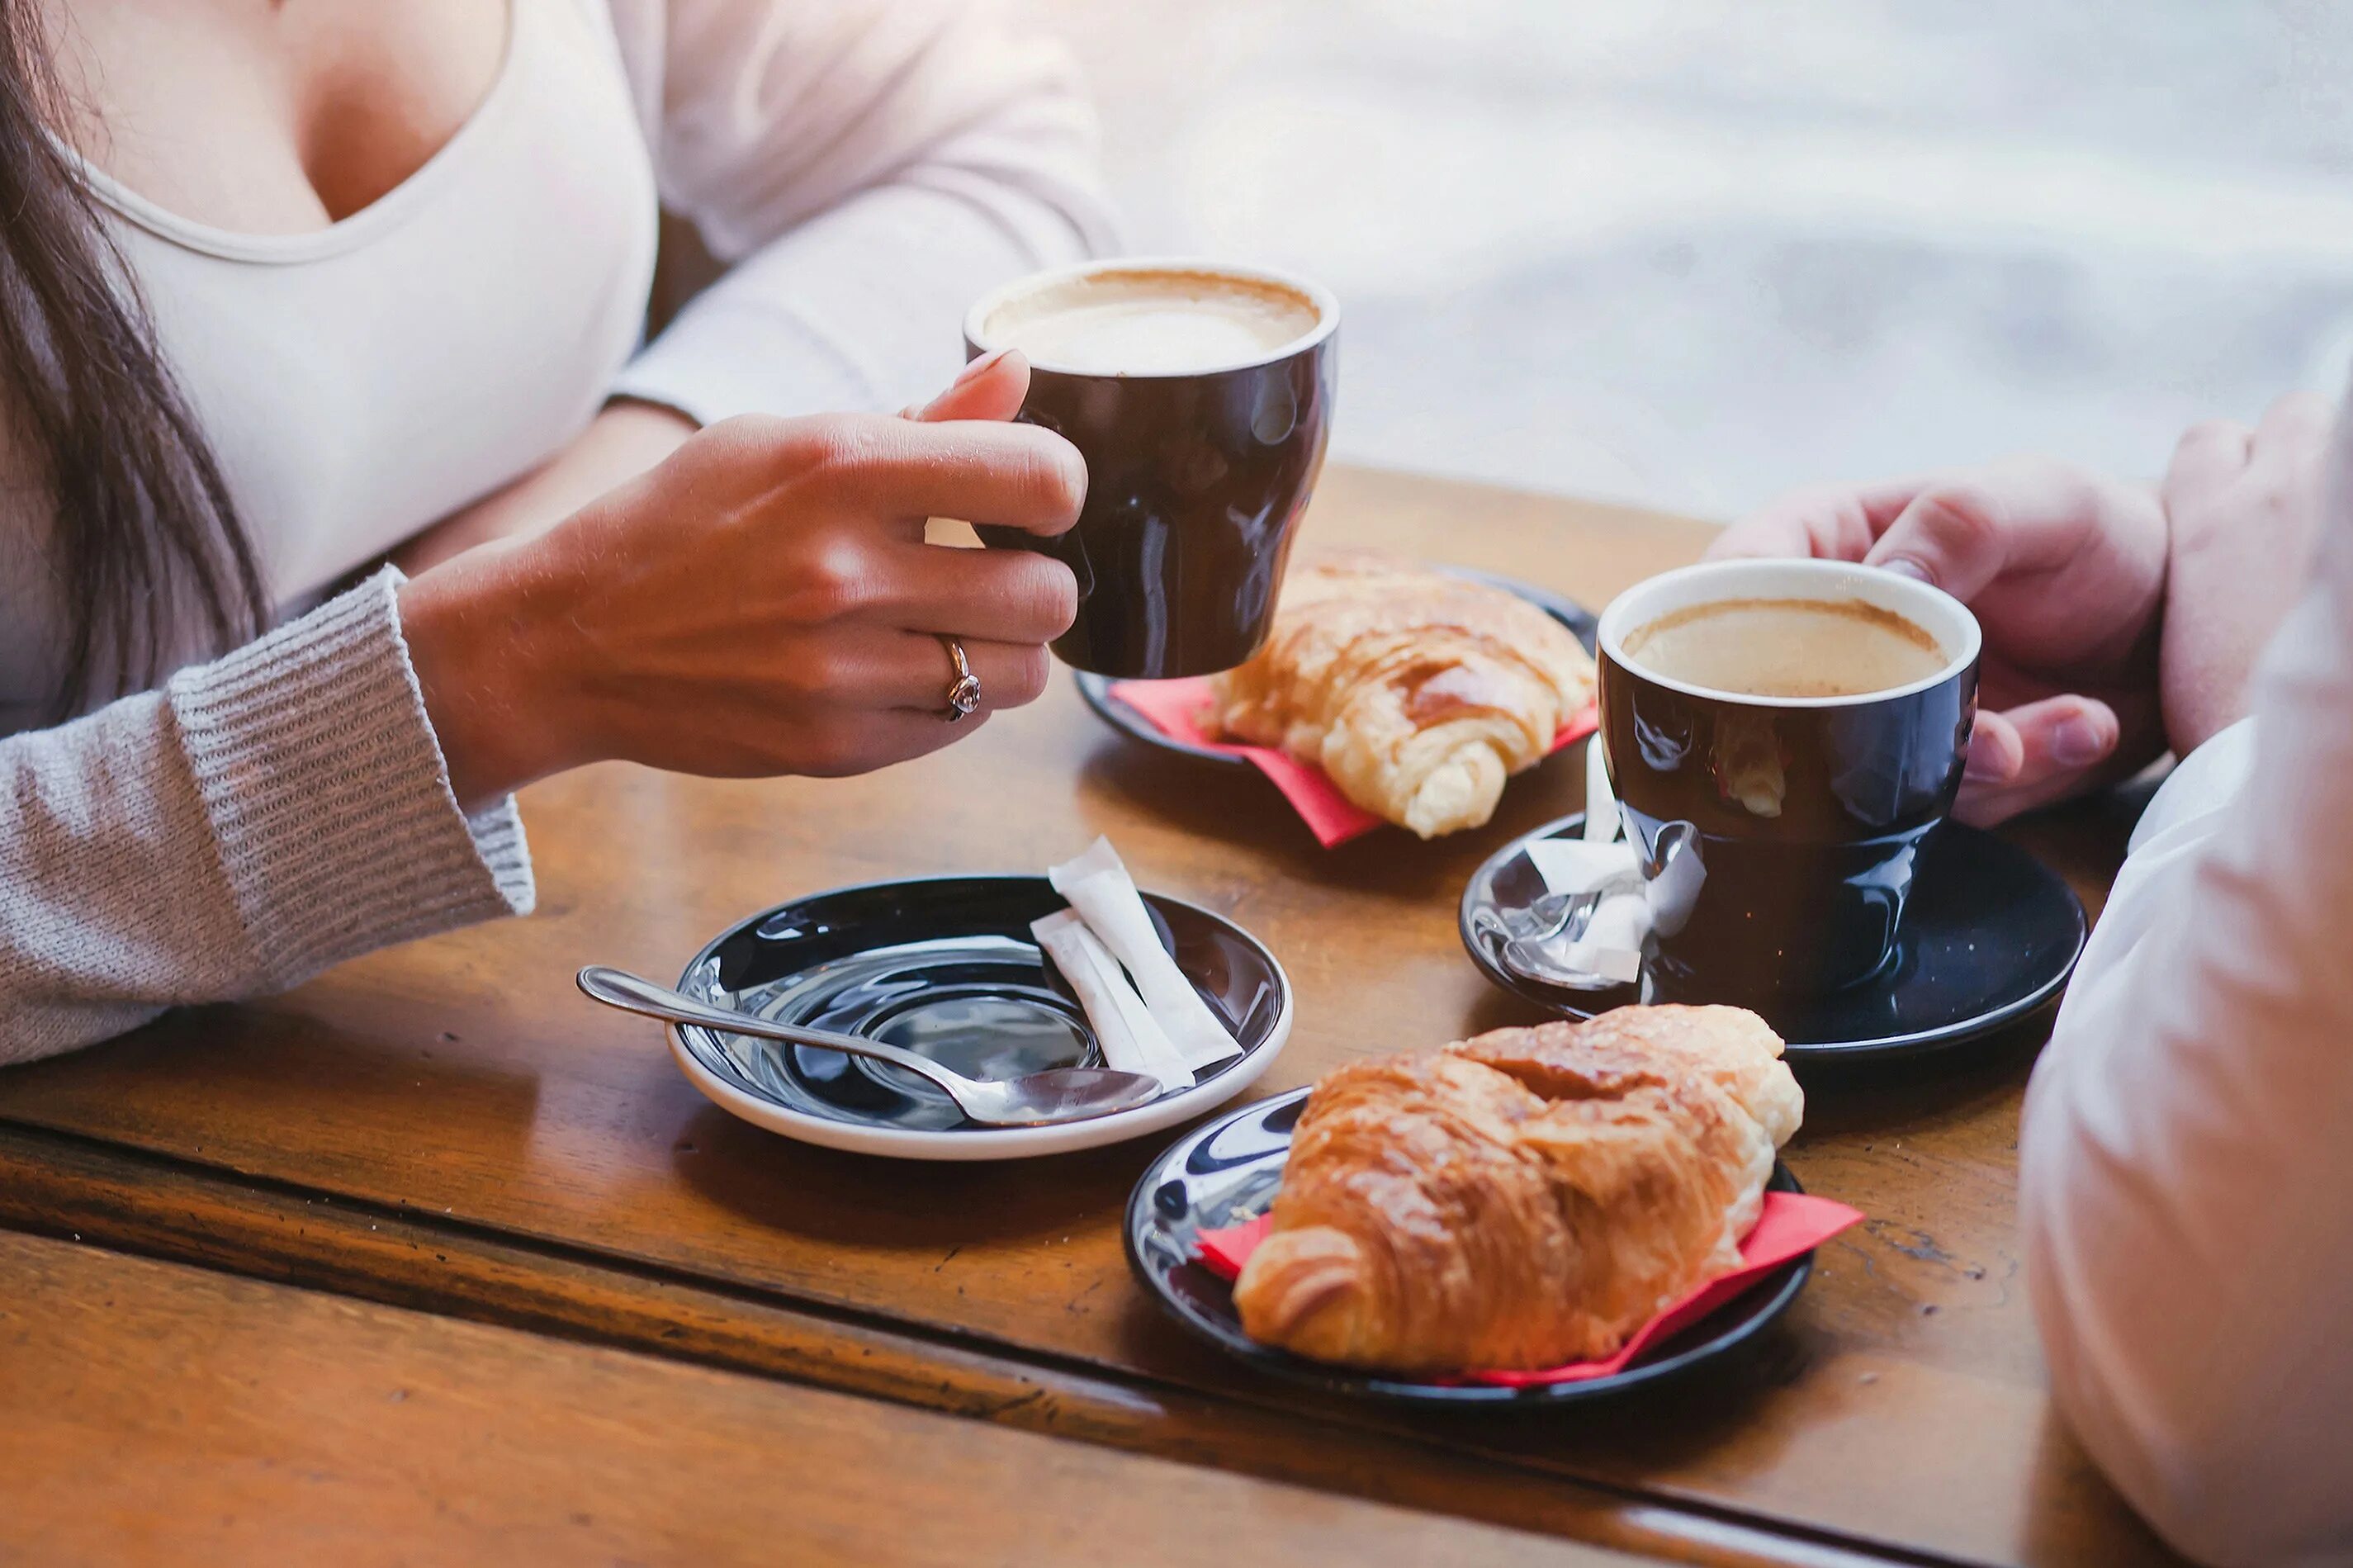 За чашкой кофе. Завтрак с кофе. Завтрак в кофейне. Девушка завтракает в кафе. Завтрак с кофе на двоих.